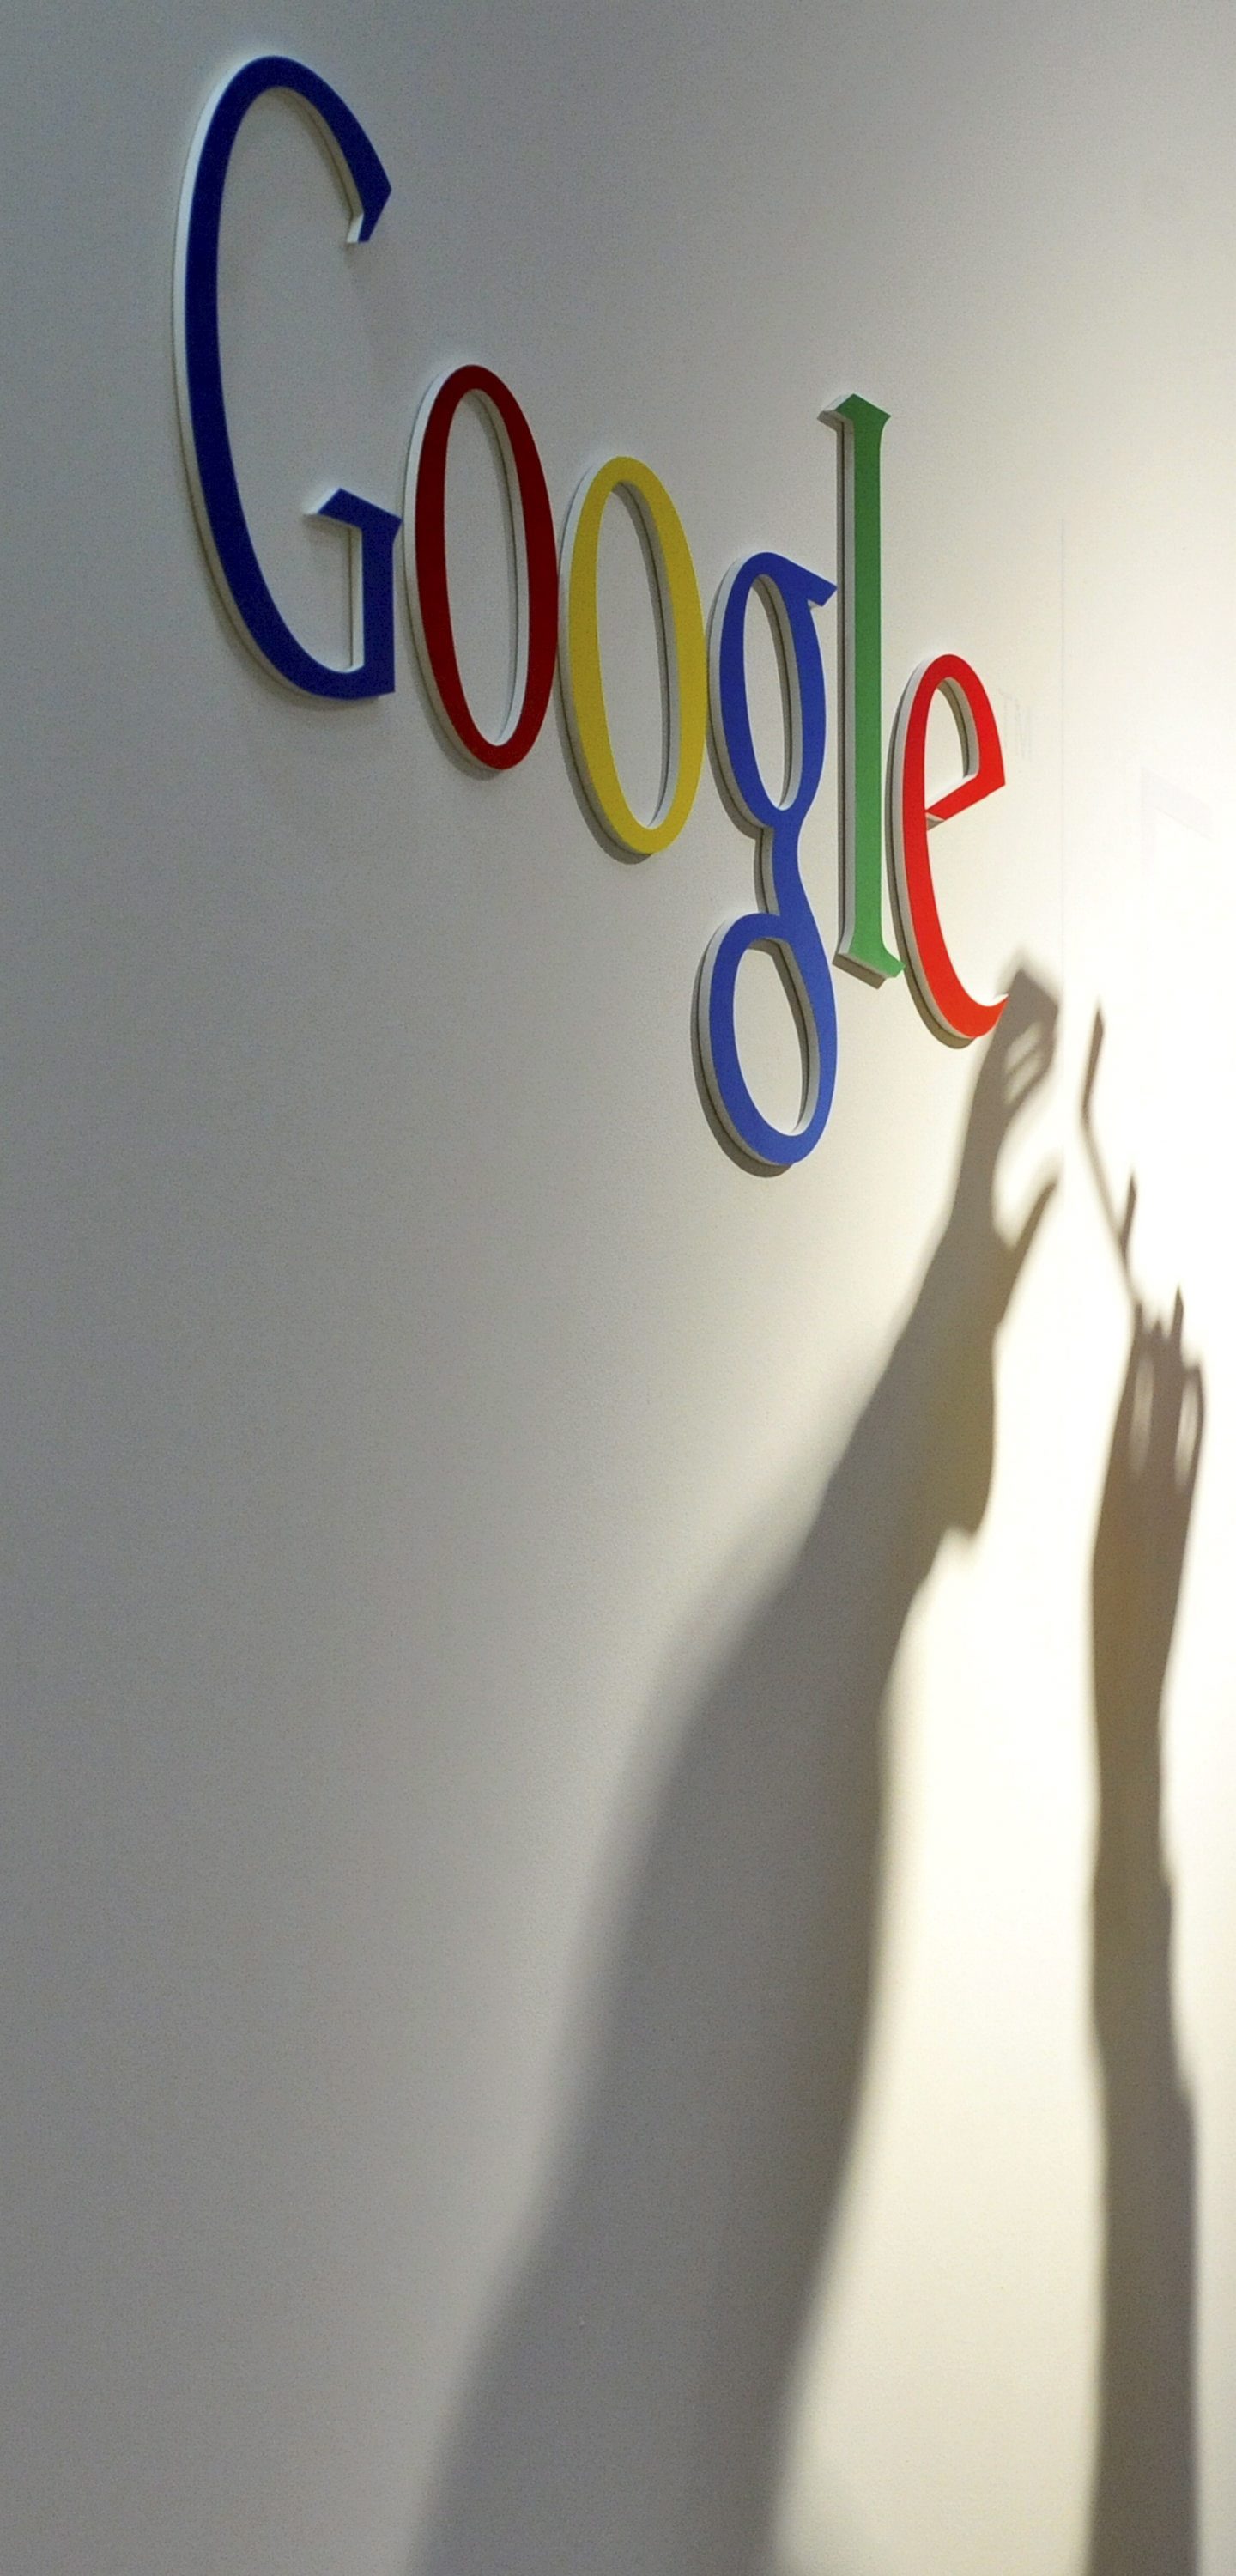 Google се преструктурира, формира мега-компания